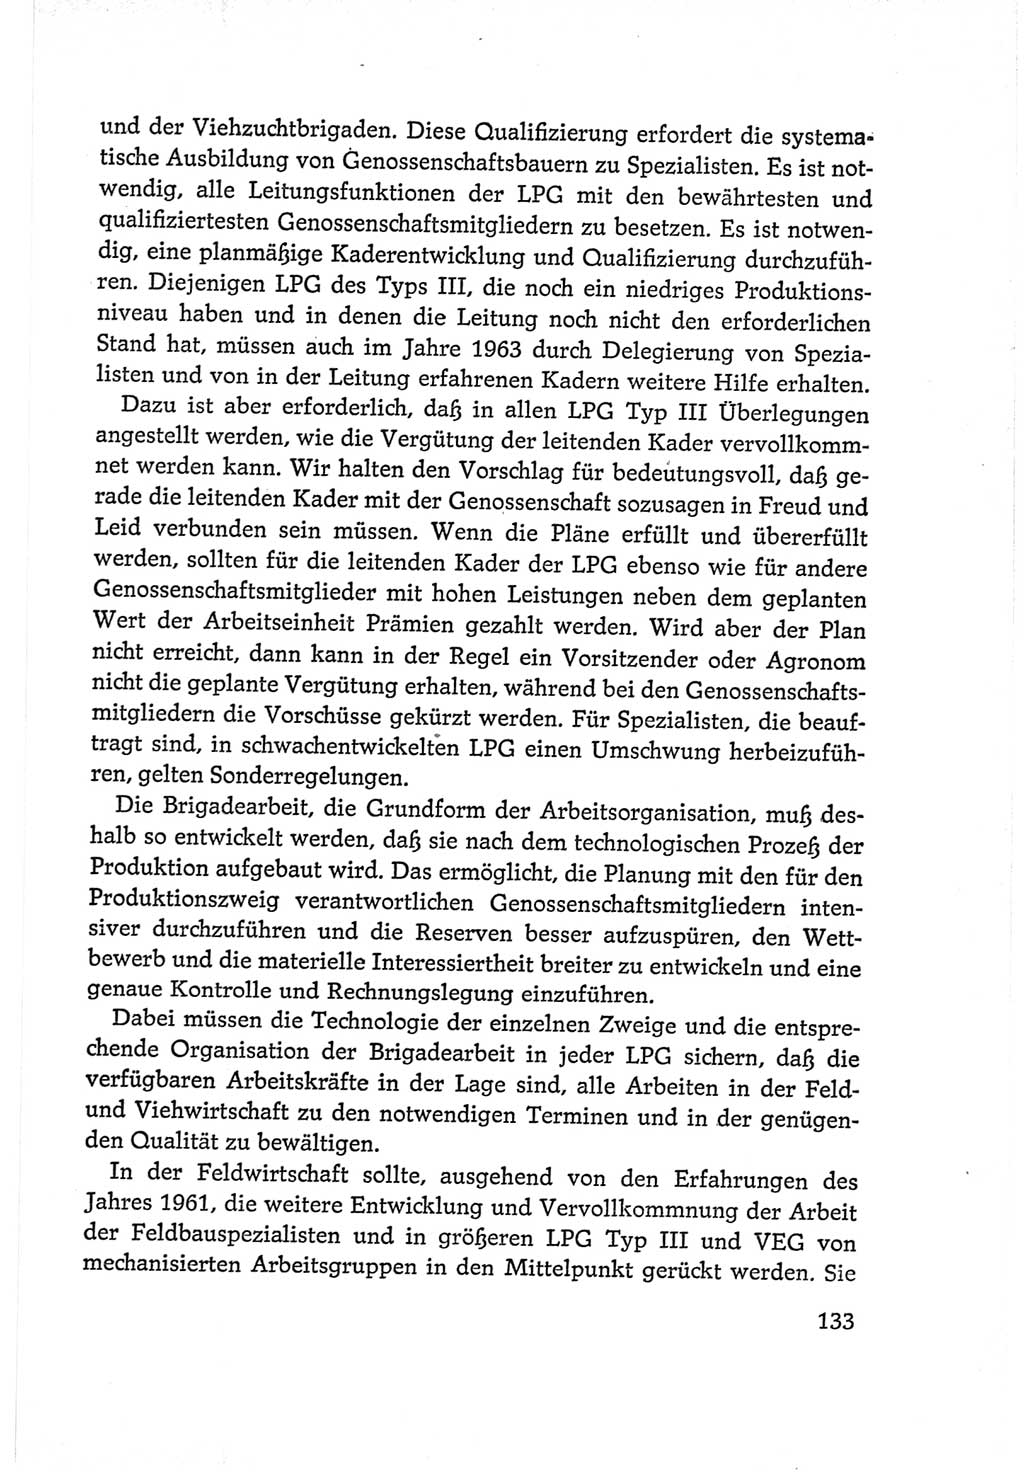 Protokoll der Verhandlungen des Ⅵ. Parteitages der Sozialistischen Einheitspartei Deutschlands (SED) [Deutsche Demokratische Republik (DDR)] 1963, Band Ⅰ, Seite 133 (Prot. Verh. Ⅵ. PT SED DDR 1963, Bd. Ⅰ, S. 133)